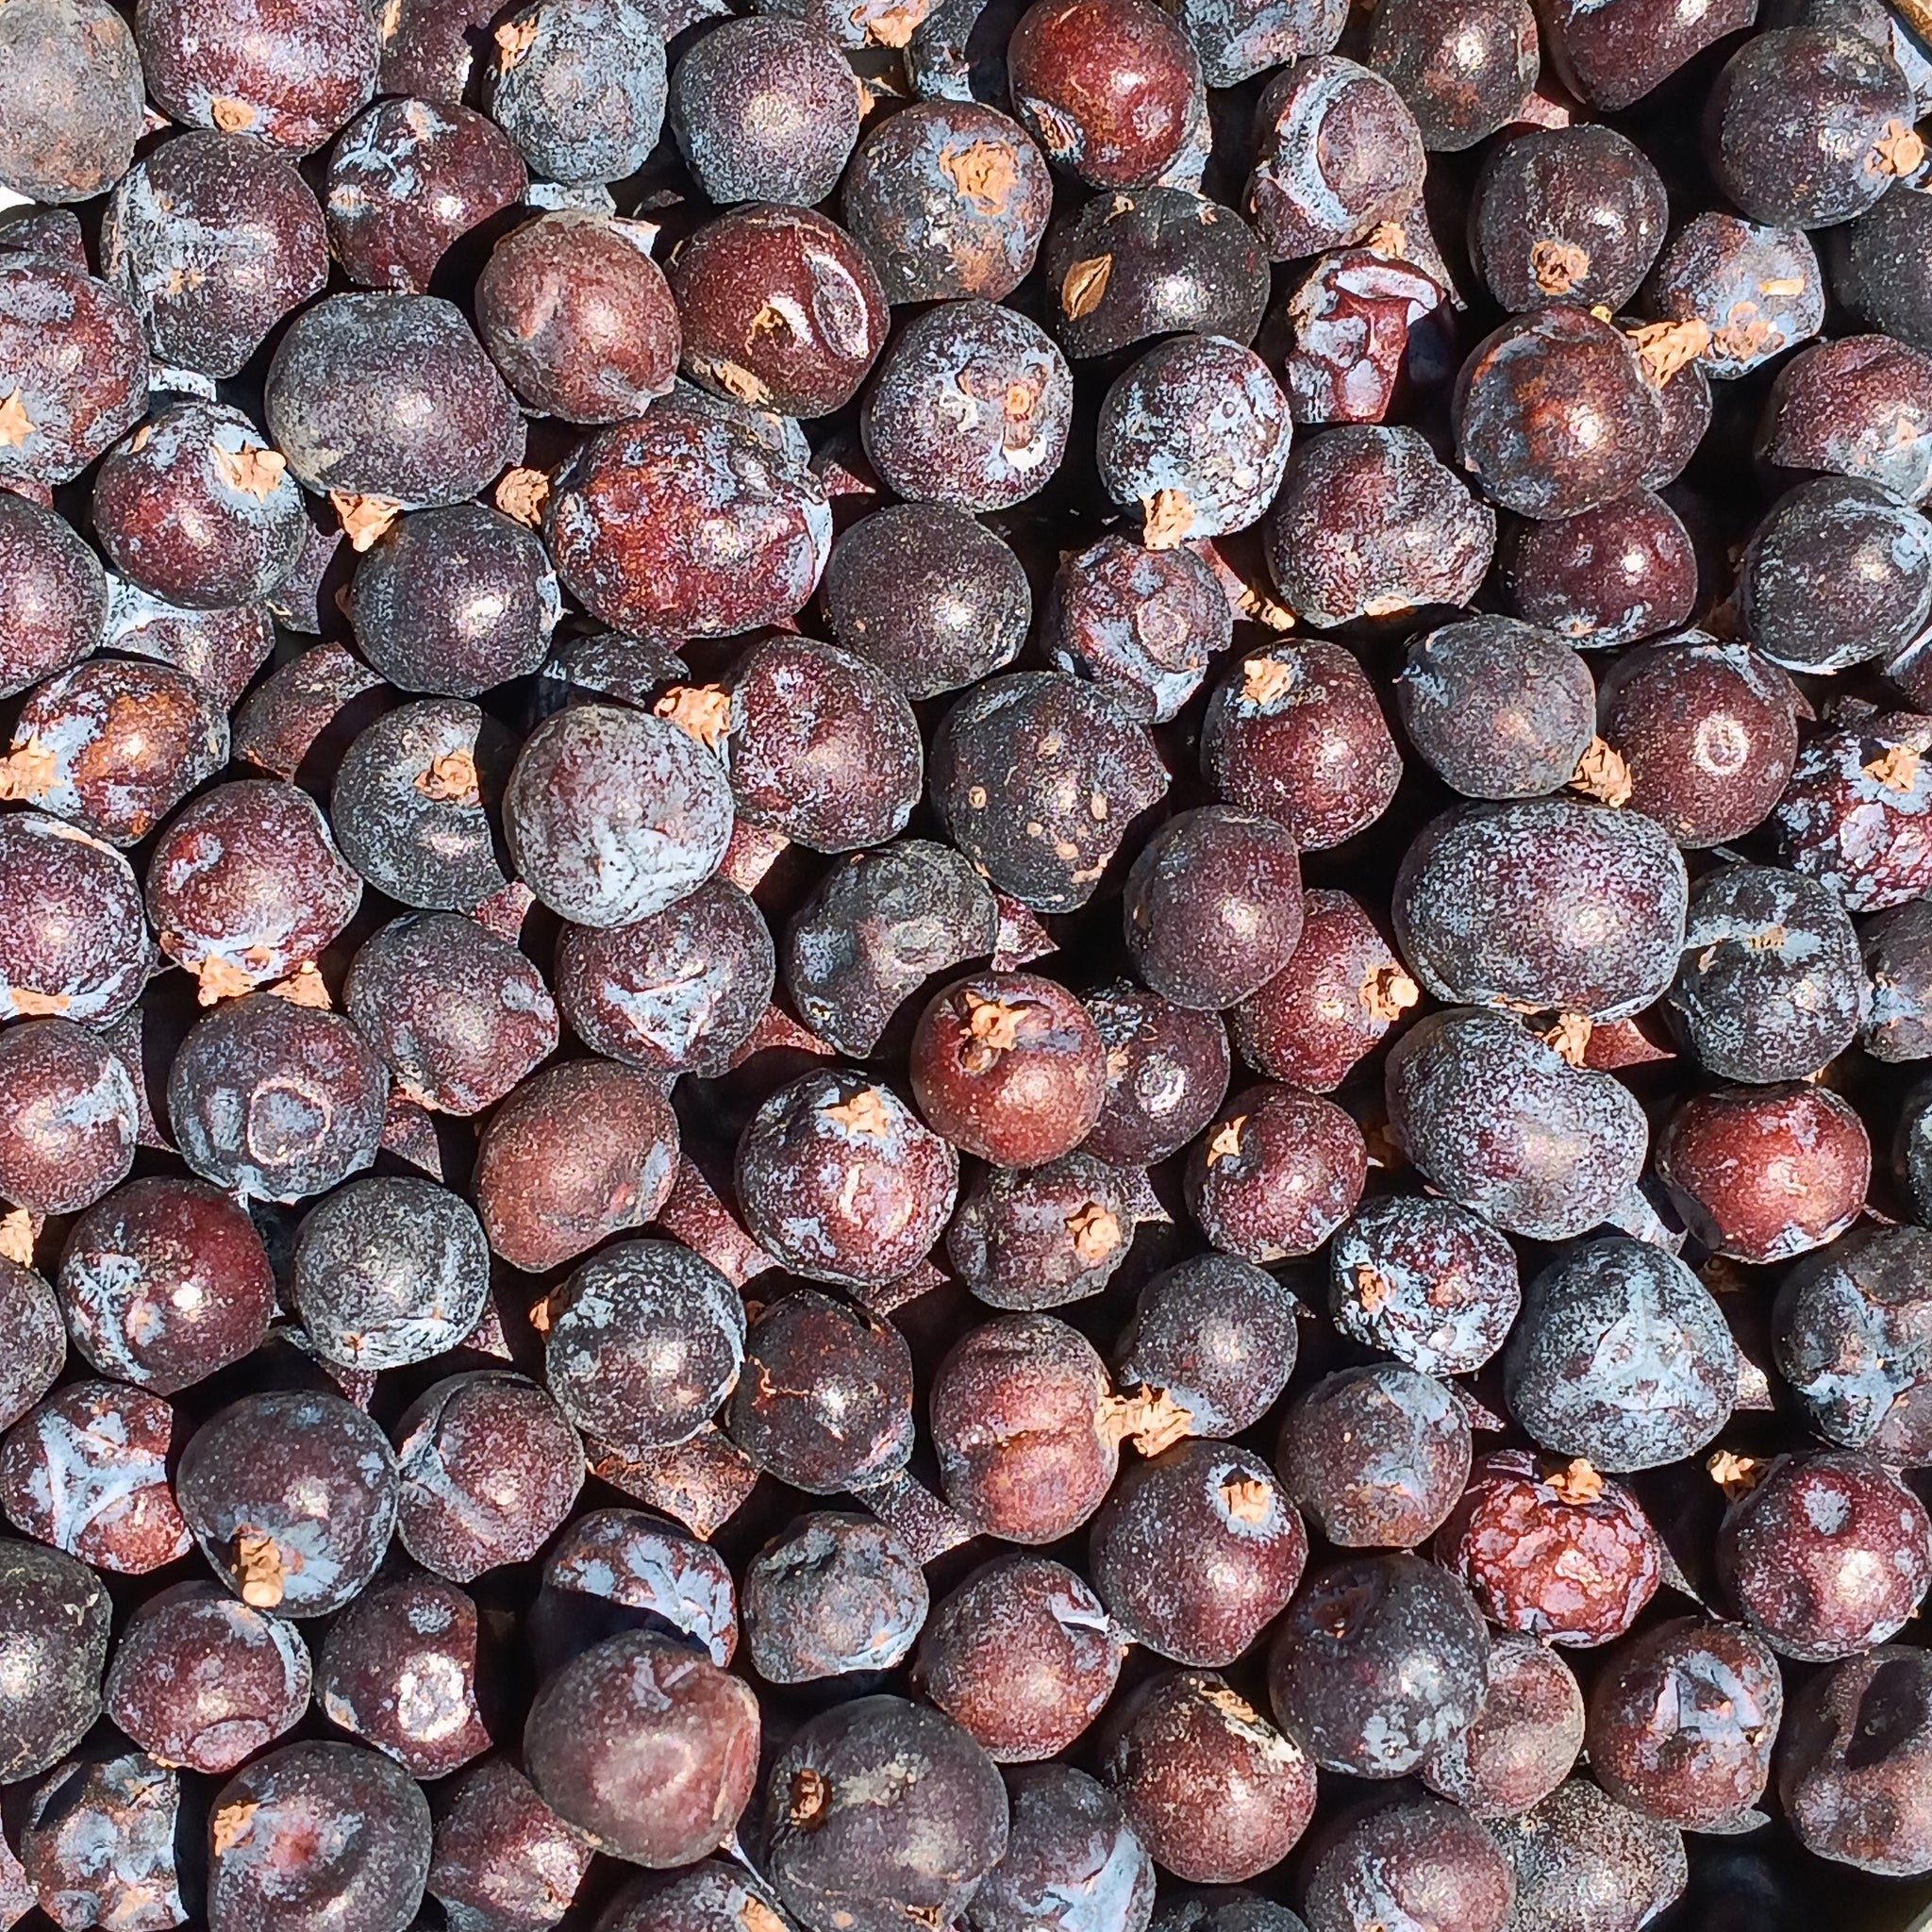 Juniper Berries (Juniperus Communis)